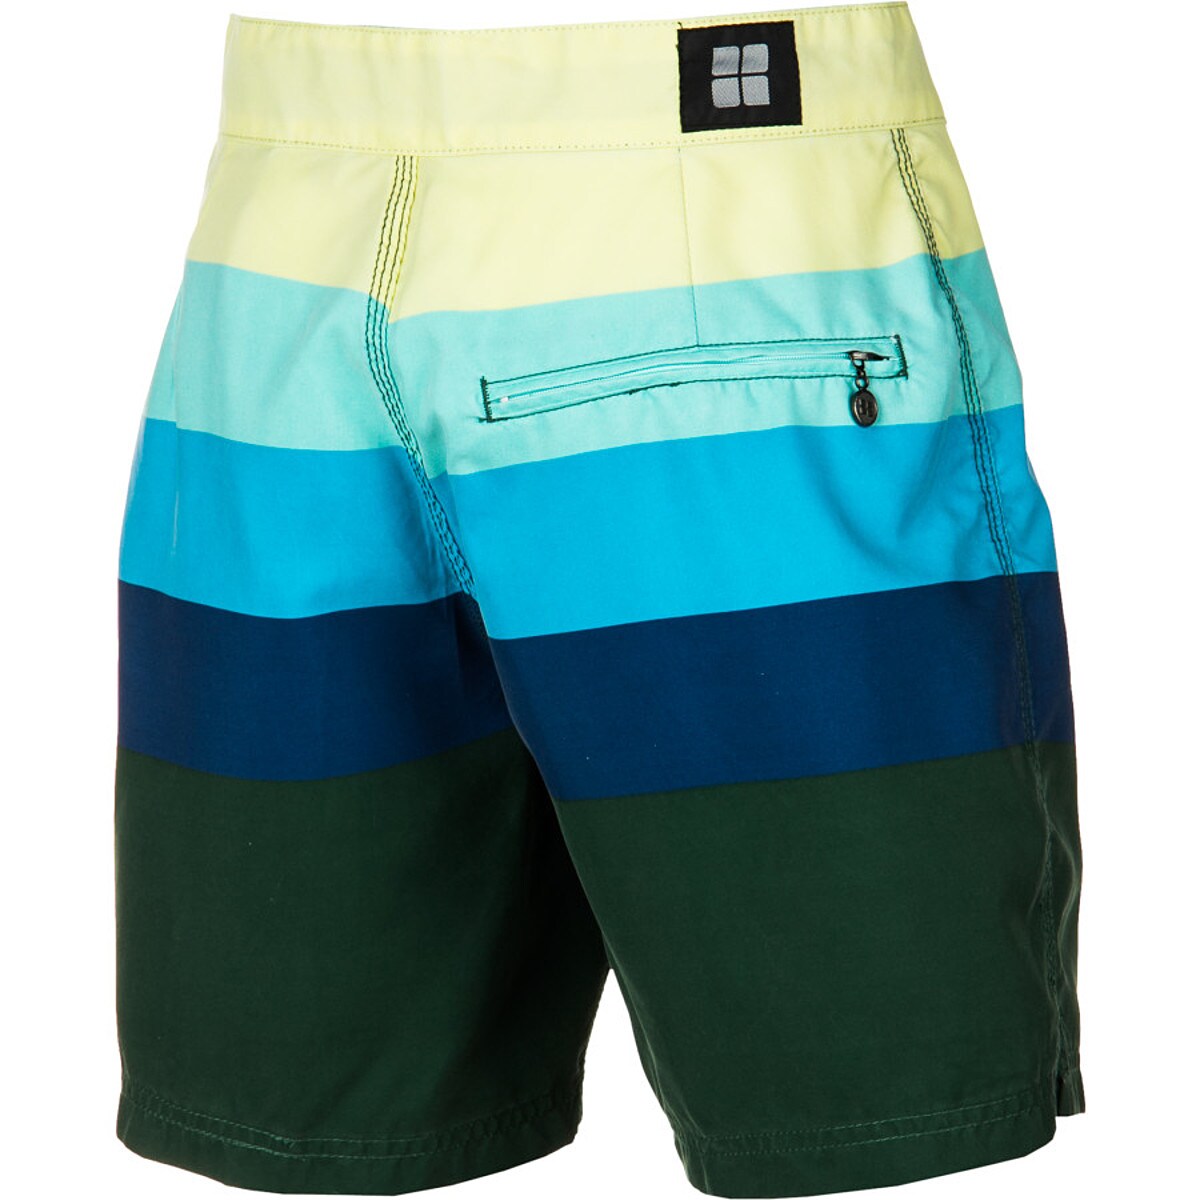 Insight Retro Daze Mid Board Short - Men's - Clothing